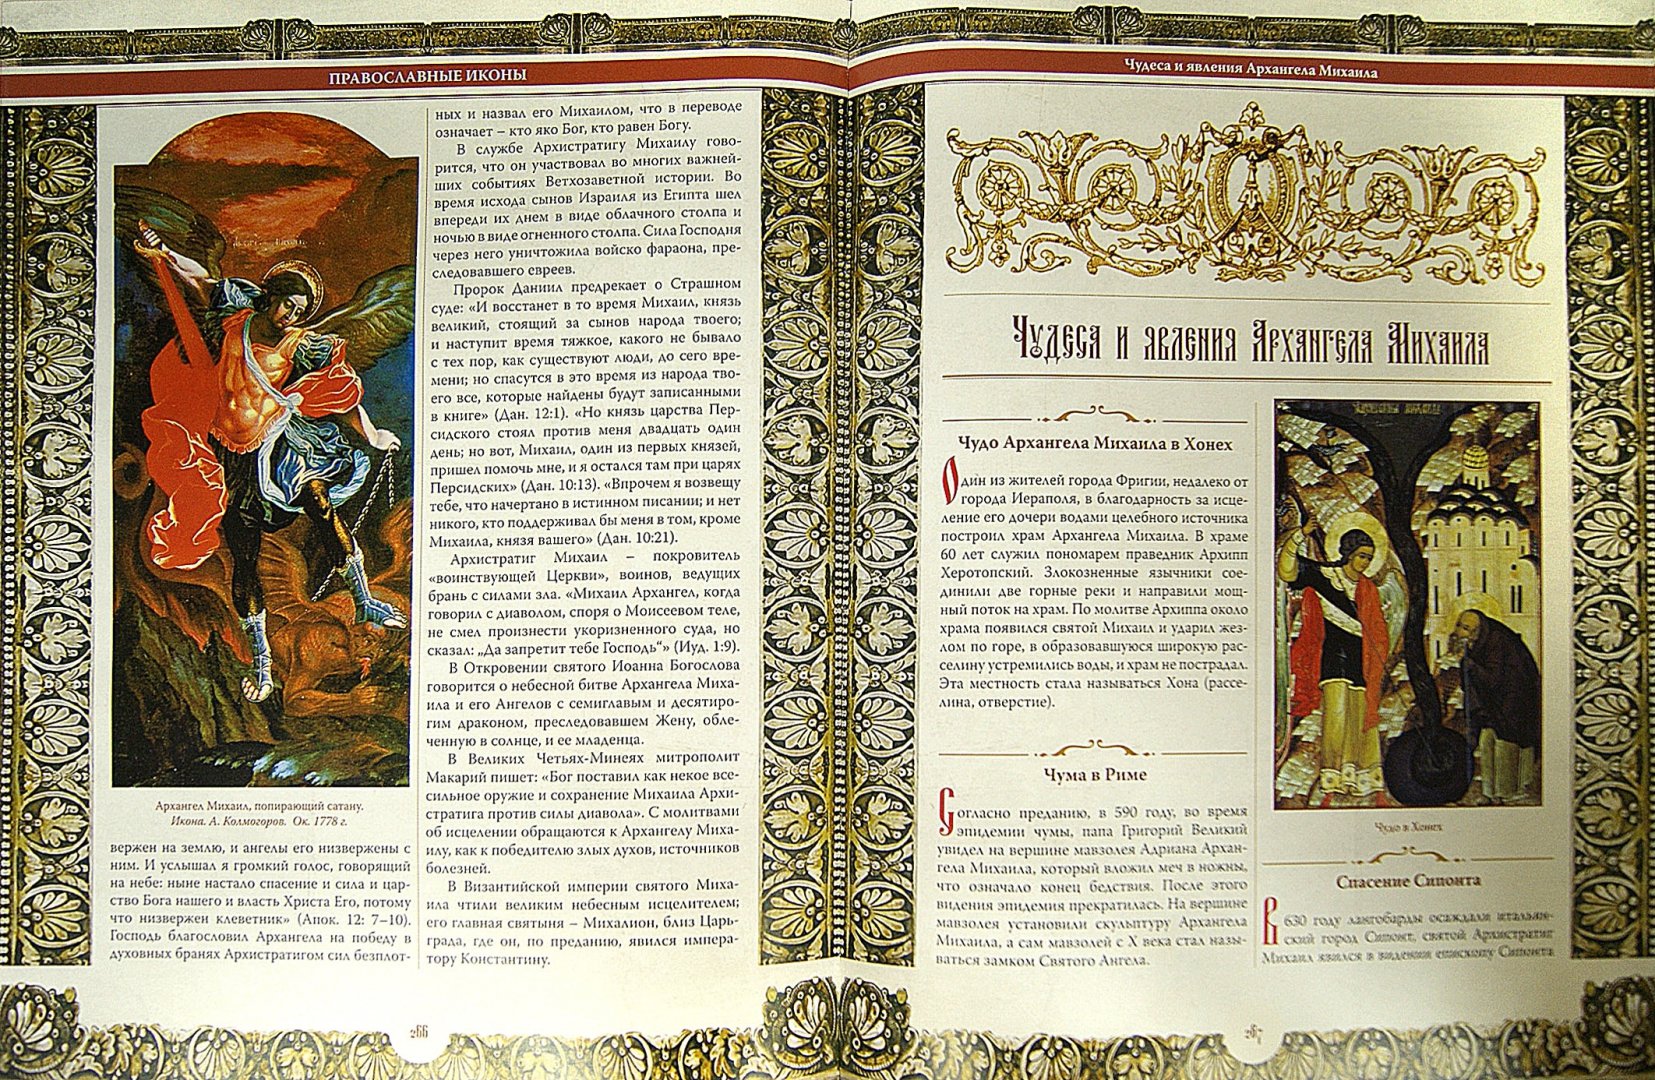 Иллюстрация 1 из 8 для Православные иконы - Евстигнеев, Евстигнеев, Князева | Лабиринт - книги. Источник: Лабиринт